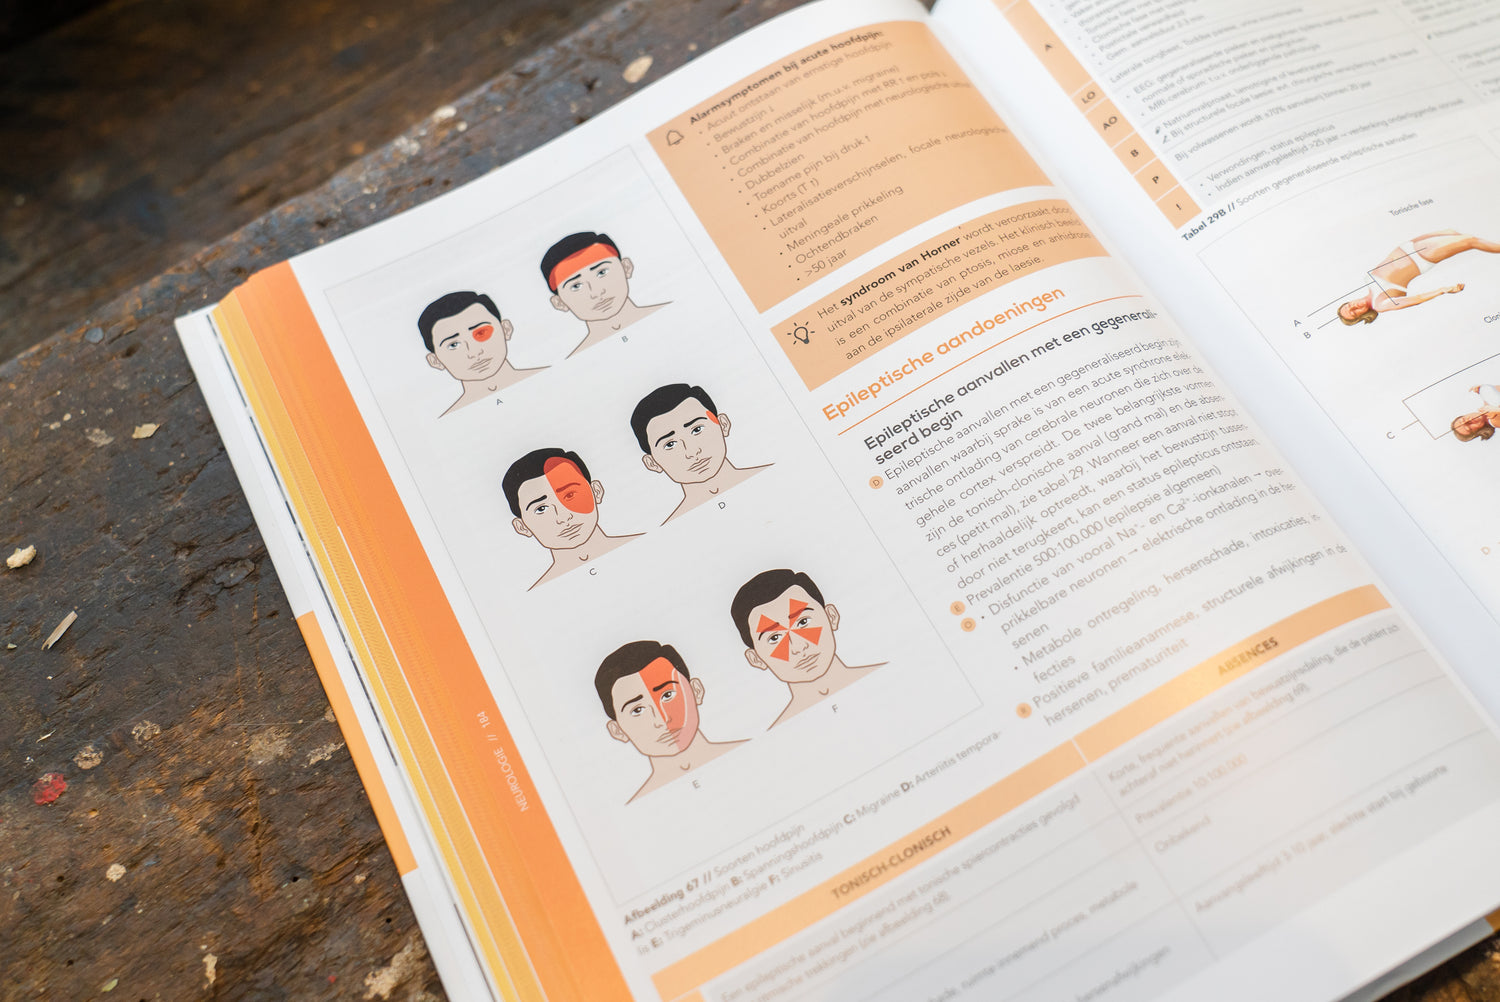 Bladzijde uit de Compendium Geneeskunde boekenreeks met daarop een afbeelding van verschillende soorten hoofdpijn, een kader met alarmsymptomen bij acute hoofdpijn en een weetje over het syndroom van Horner 